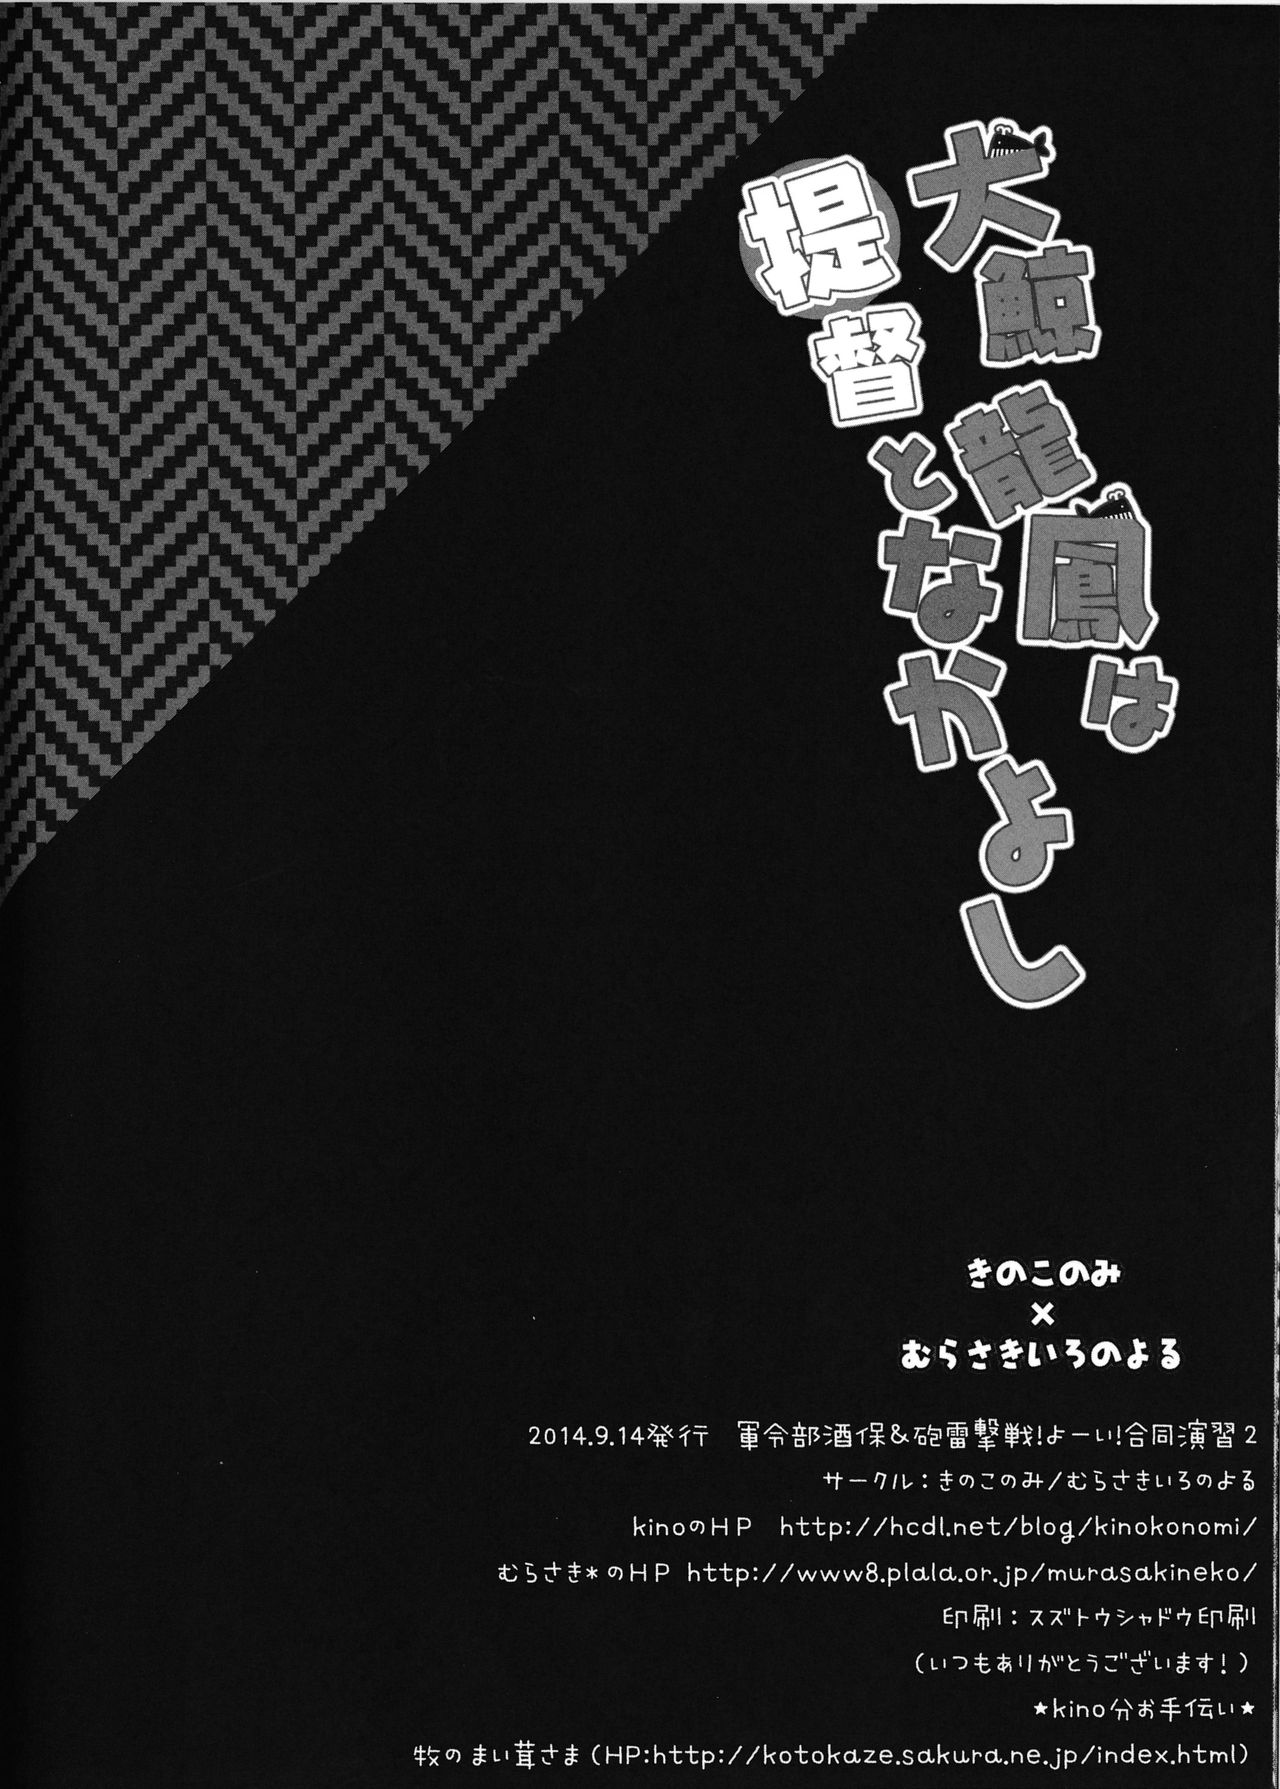 (Gunreibu Shuho & Houraigekisen! Yo-i! Goudou Enshuu 2Senme) [Kinokonomi, Murasakiiro no Yoru (kino, Murasaki)] Taigei Ryuuhou wa Teitoku to Nakayoshi (Kantai Collection -KanColle-) (軍令部酒保&砲雷撃戦!よーい!合同演習弐戦目) [きのこのみ、むらさきいろのよる (kino、むらさき)] 大鯨龍鳳は提督となかよし (艦隊これくしょん -艦これ-)